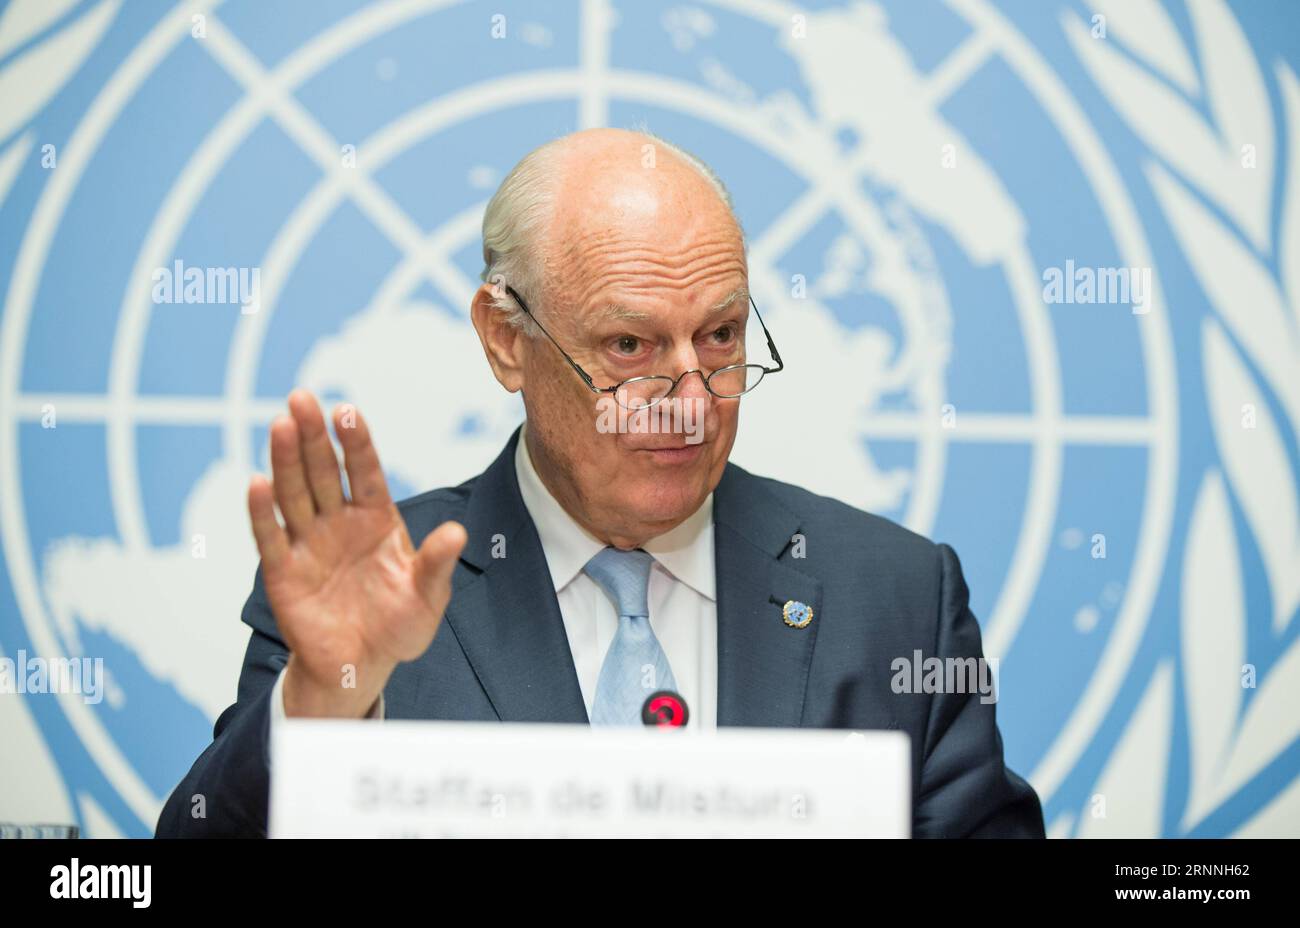 (170714) -- GINEVRA, 14 luglio 2017 -- l'inviato speciale delle Nazioni Unite per la Siria Staffan de Mistura interviene in una conferenza stampa al Palais des Nations di Ginevra, in Svizzera, il 14 luglio 2017. L'inviato speciale delle Nazioni Unite per la Siria Staffan de Mistura ha dichiarato venerdì sera che l'ultimo round dei colloqui di pace condotti dalle Nazioni Unite sulla Siria si è concluso con progressi incrementali, ma senza alcuna svolta. POOL/) SVIZZERA-GINEVRA-SIRIA-COLLOQUI DI PACE-SETTIMO ROUND-CONCLUSIVO XuxJinquan PUBLICATIONxNOTxINxCHN 170714 Ginevra 14 luglio 2017 l'inviato speciale delle Nazioni Unite per la Siria Staffan de Mistura interviene A una conferenza stampa AL Palais the Natio Foto Stock